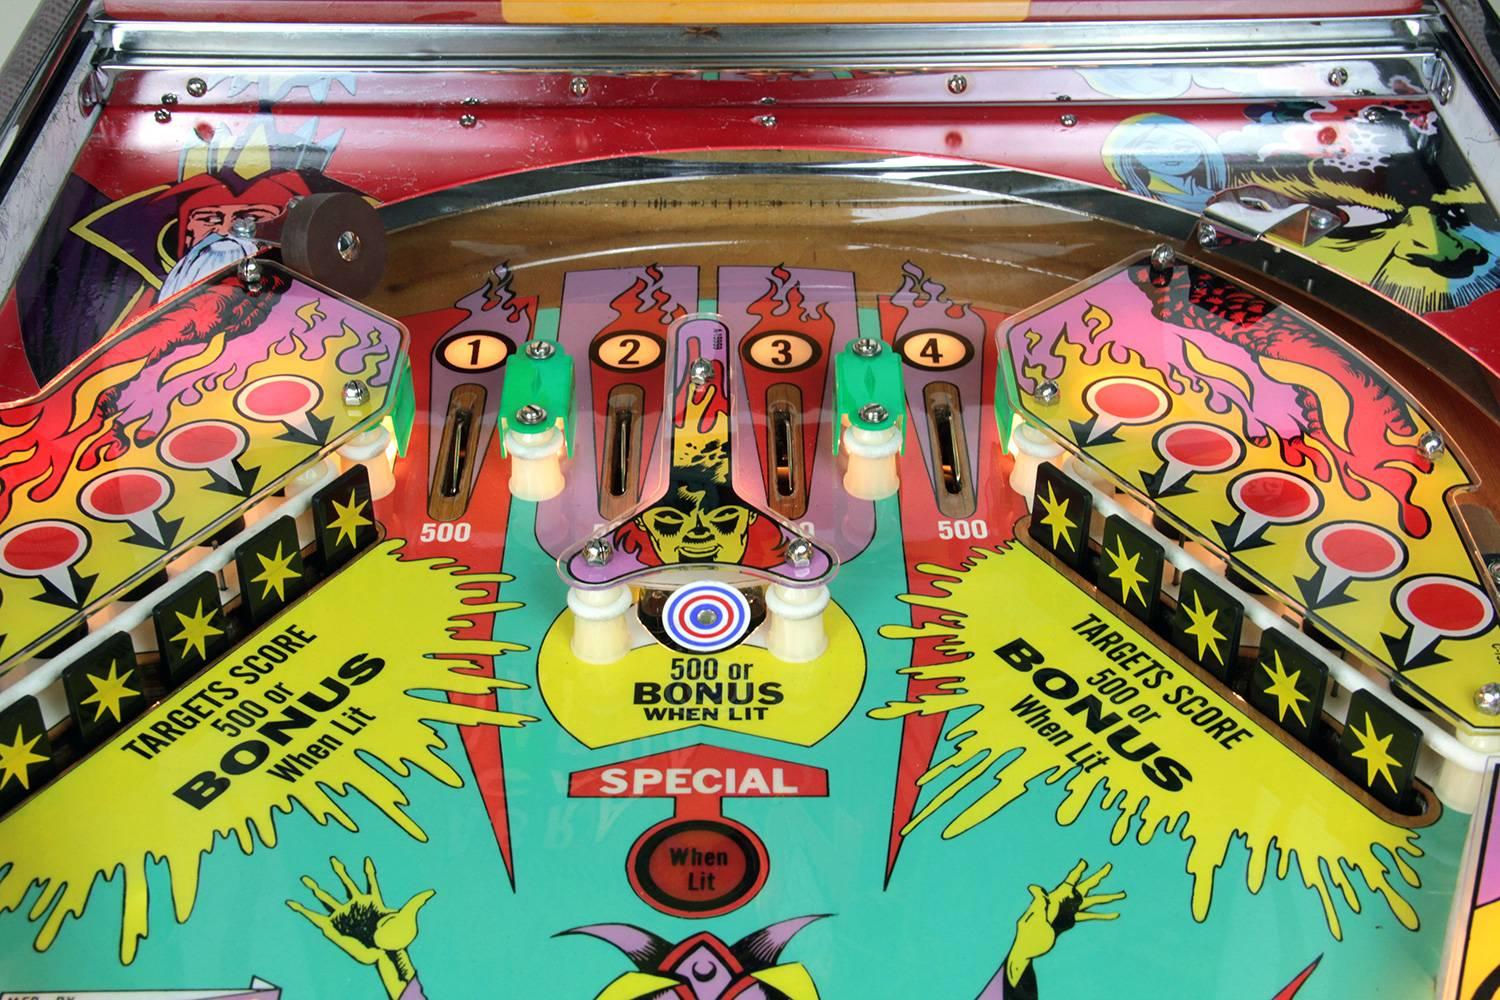 North American Gottlieb Abra Cadabra, Vintage Pinball Machine 1975, High-End Restored For Sale